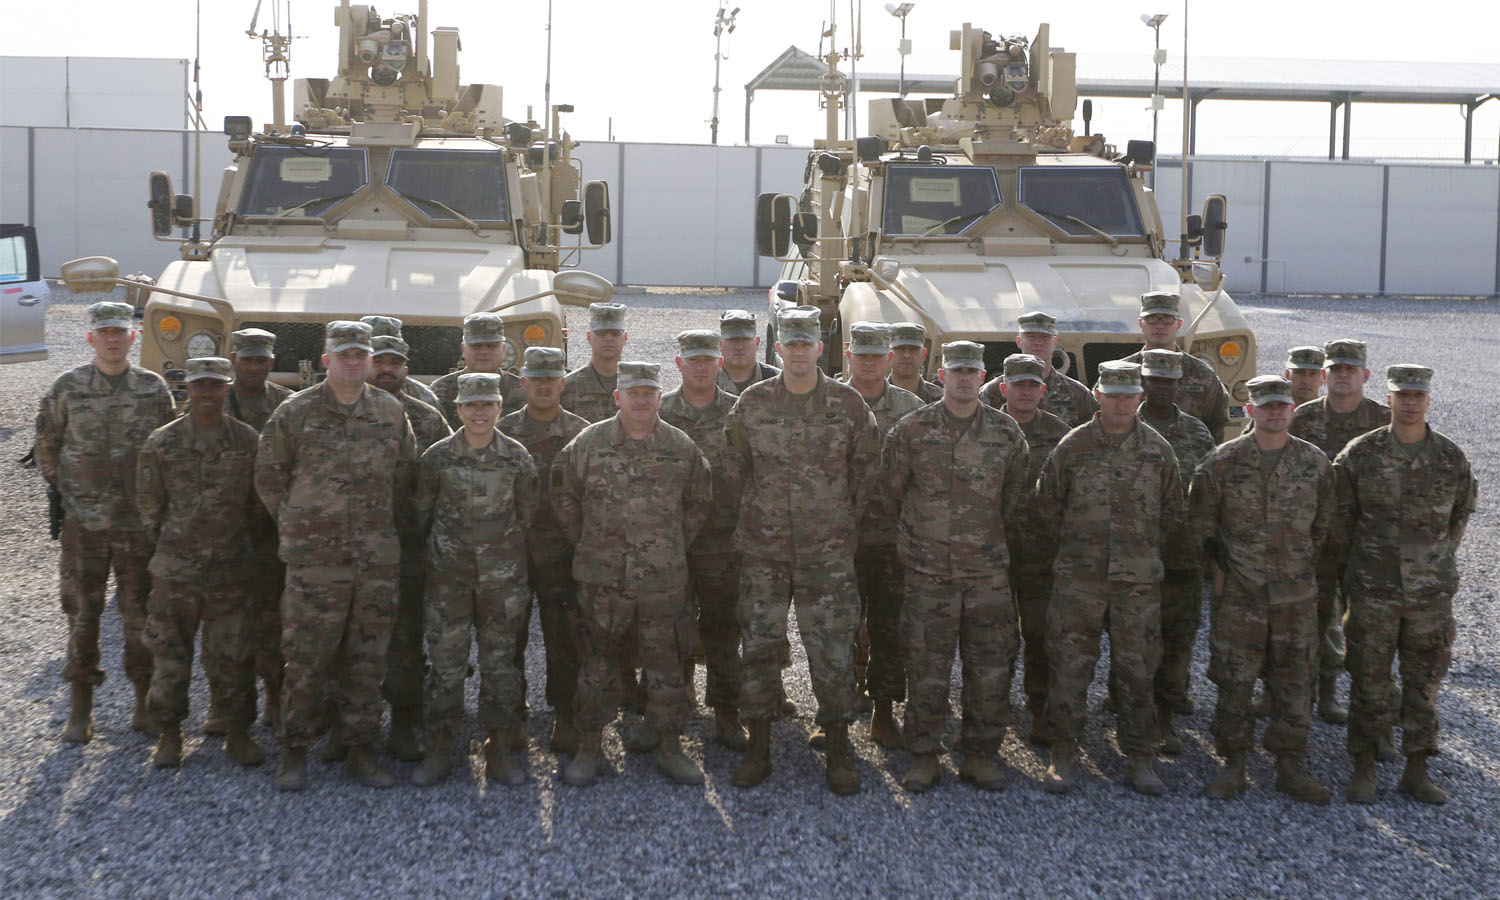 جنود من وحدة الاستدامة اللوجستية في الجيش الأمريكي خلال وجودهم بمدينة إربيل في كوردستان العراق- 1 من كانون الأول 2019 (سينتكوم)